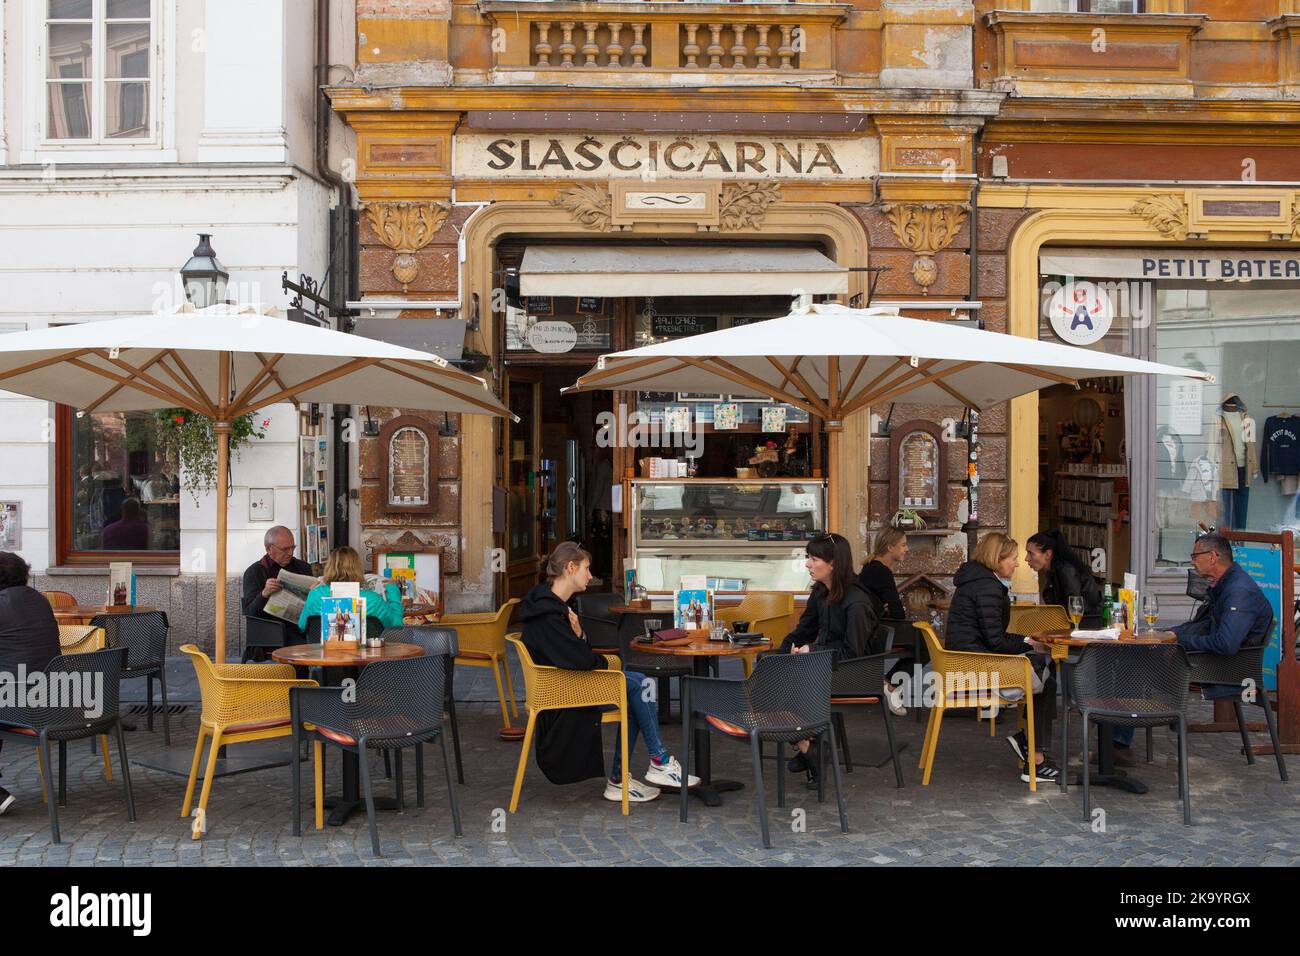 Slaščičarna Cafe & bar in Ljubljana, Slovenia Stock Photo